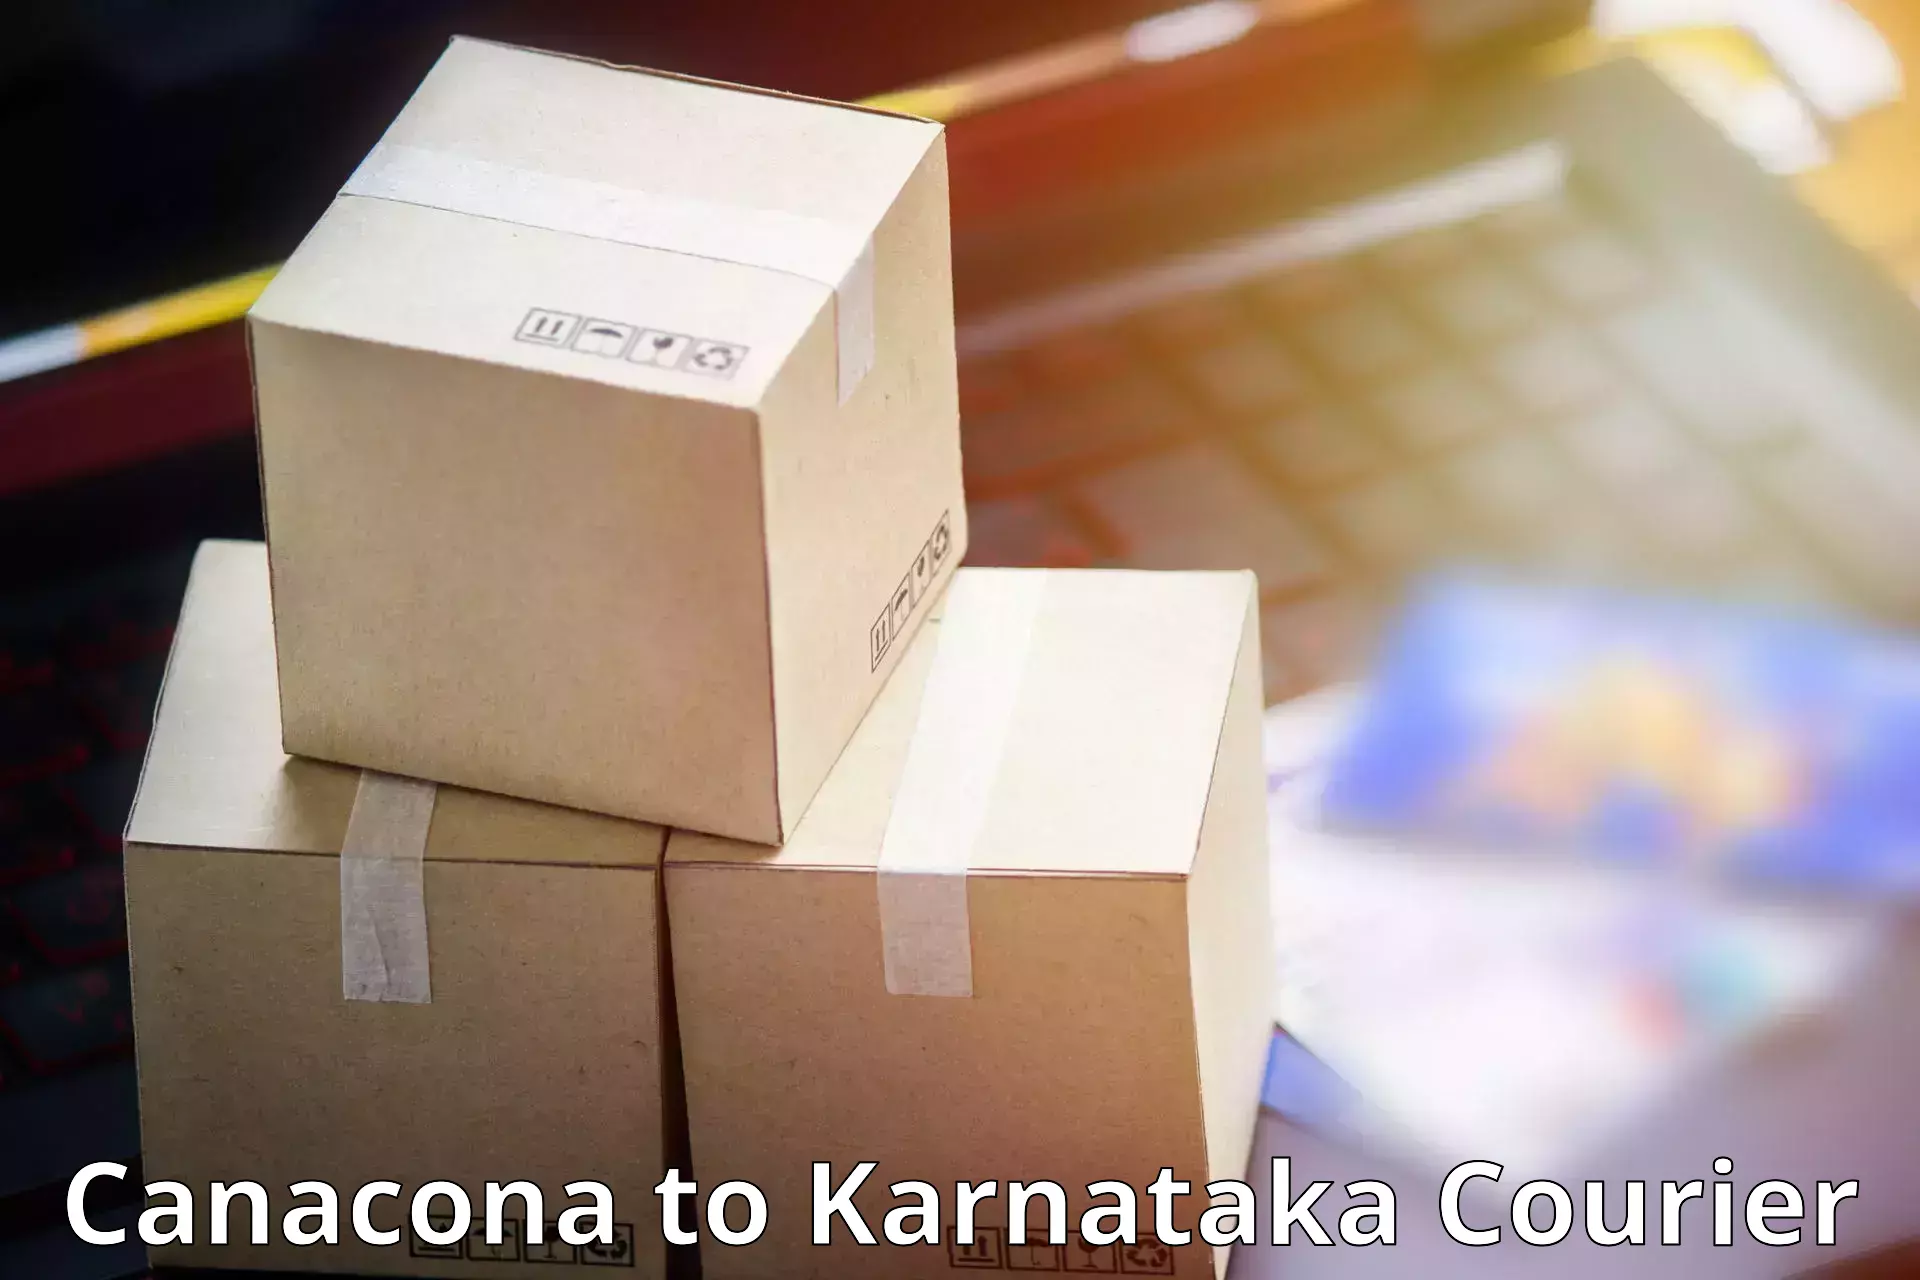 Optimized shipping services Canacona to Karnataka